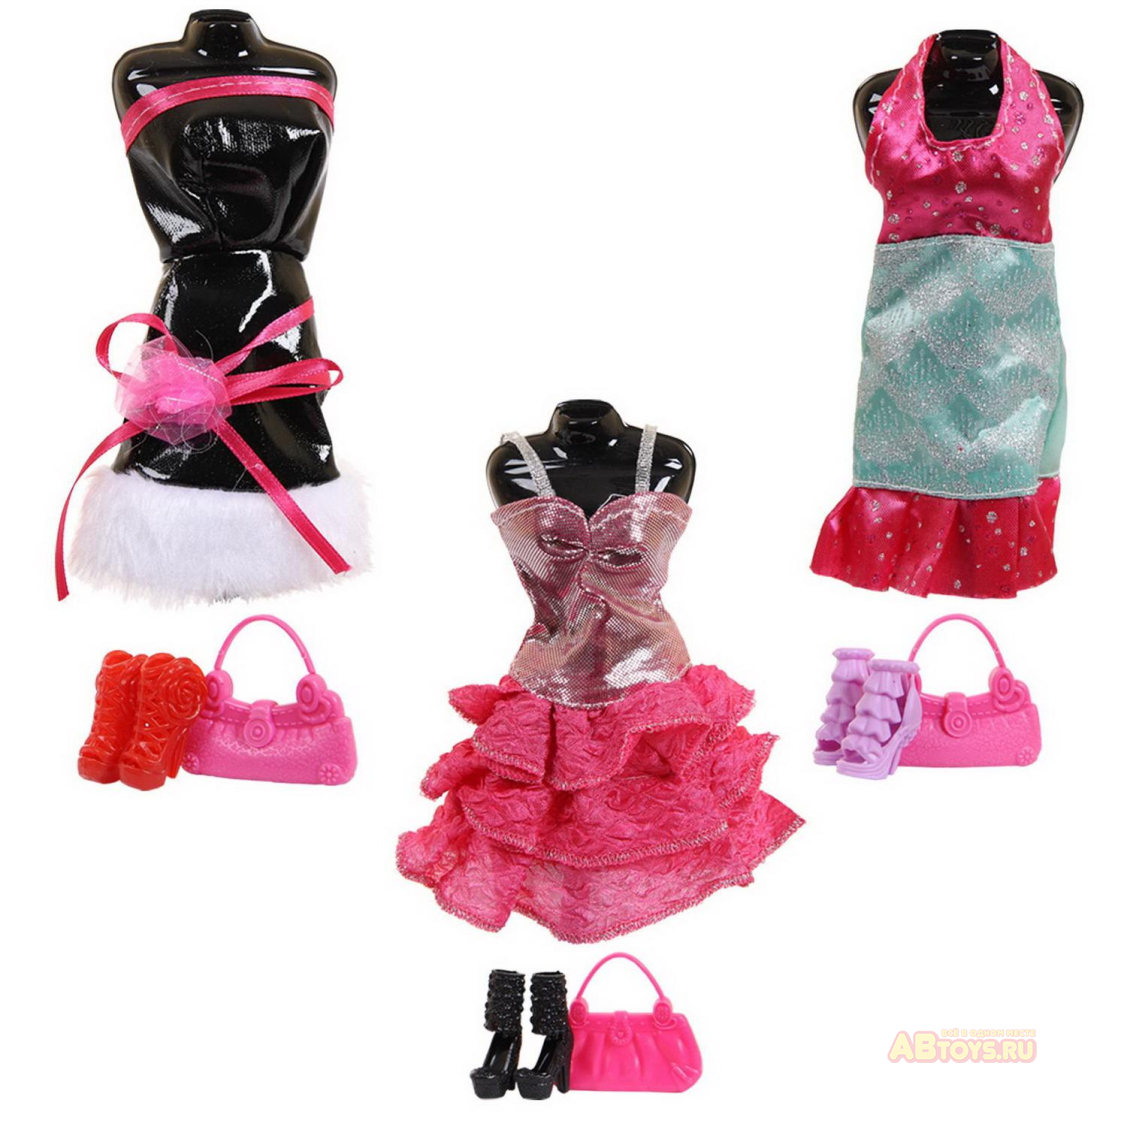 Одежда и аксессуары для куклы высотой 29 см 3 шт в ассортименте (платье, туфли, сумочка)